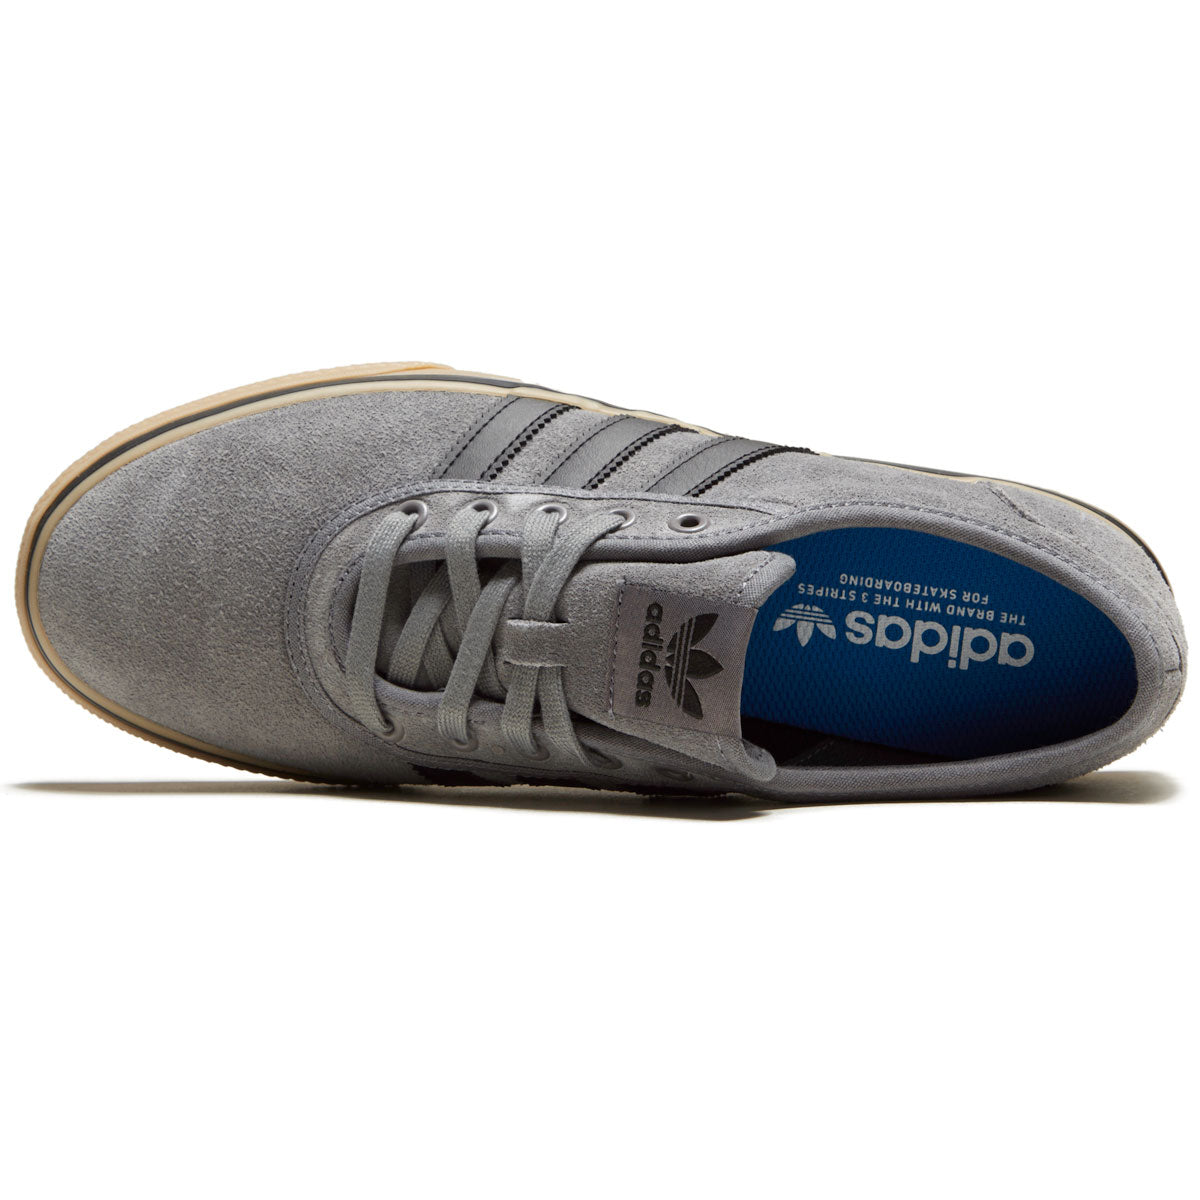 Adidas Adi Shoes - Grey/Core Black/Gum CCS